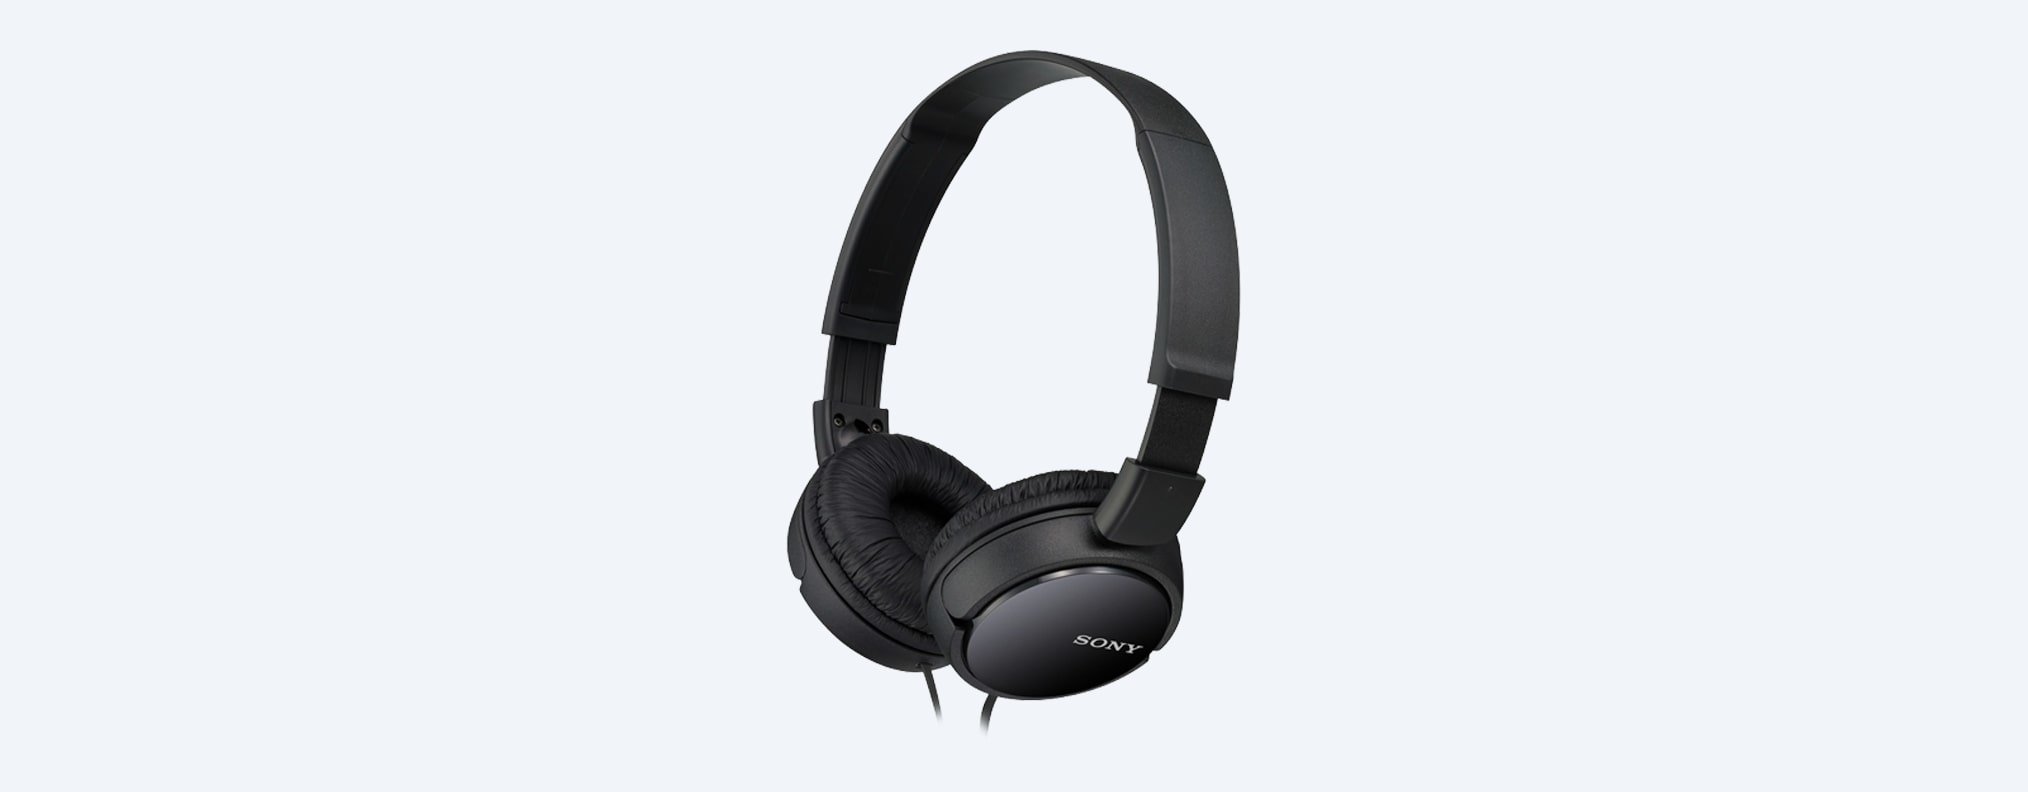 Słuchawki Sony nauszne MDR-ZX110AP czarne widok od prawego boku